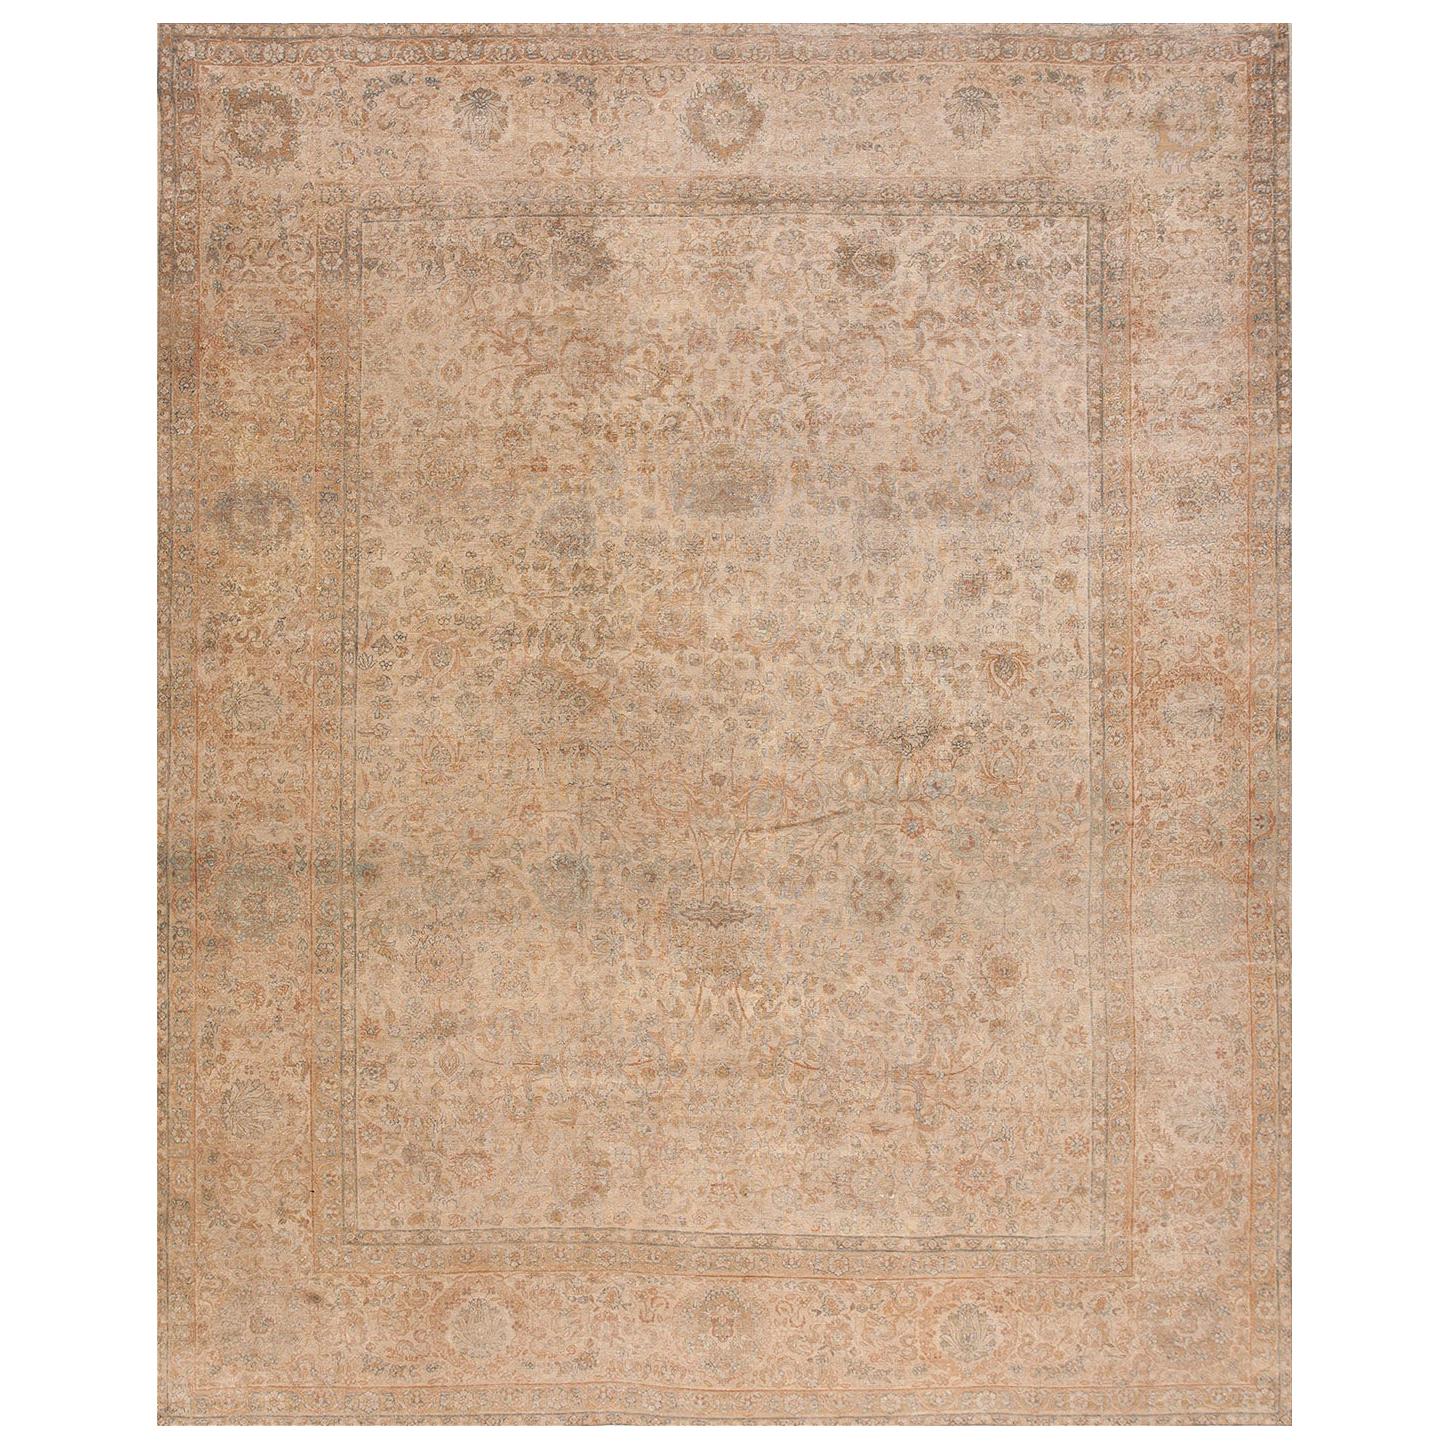 Persischer Kerman-Teppich aus den 1930er Jahren ( 9'3"" x 11'9"" - 282 x 358 cm)